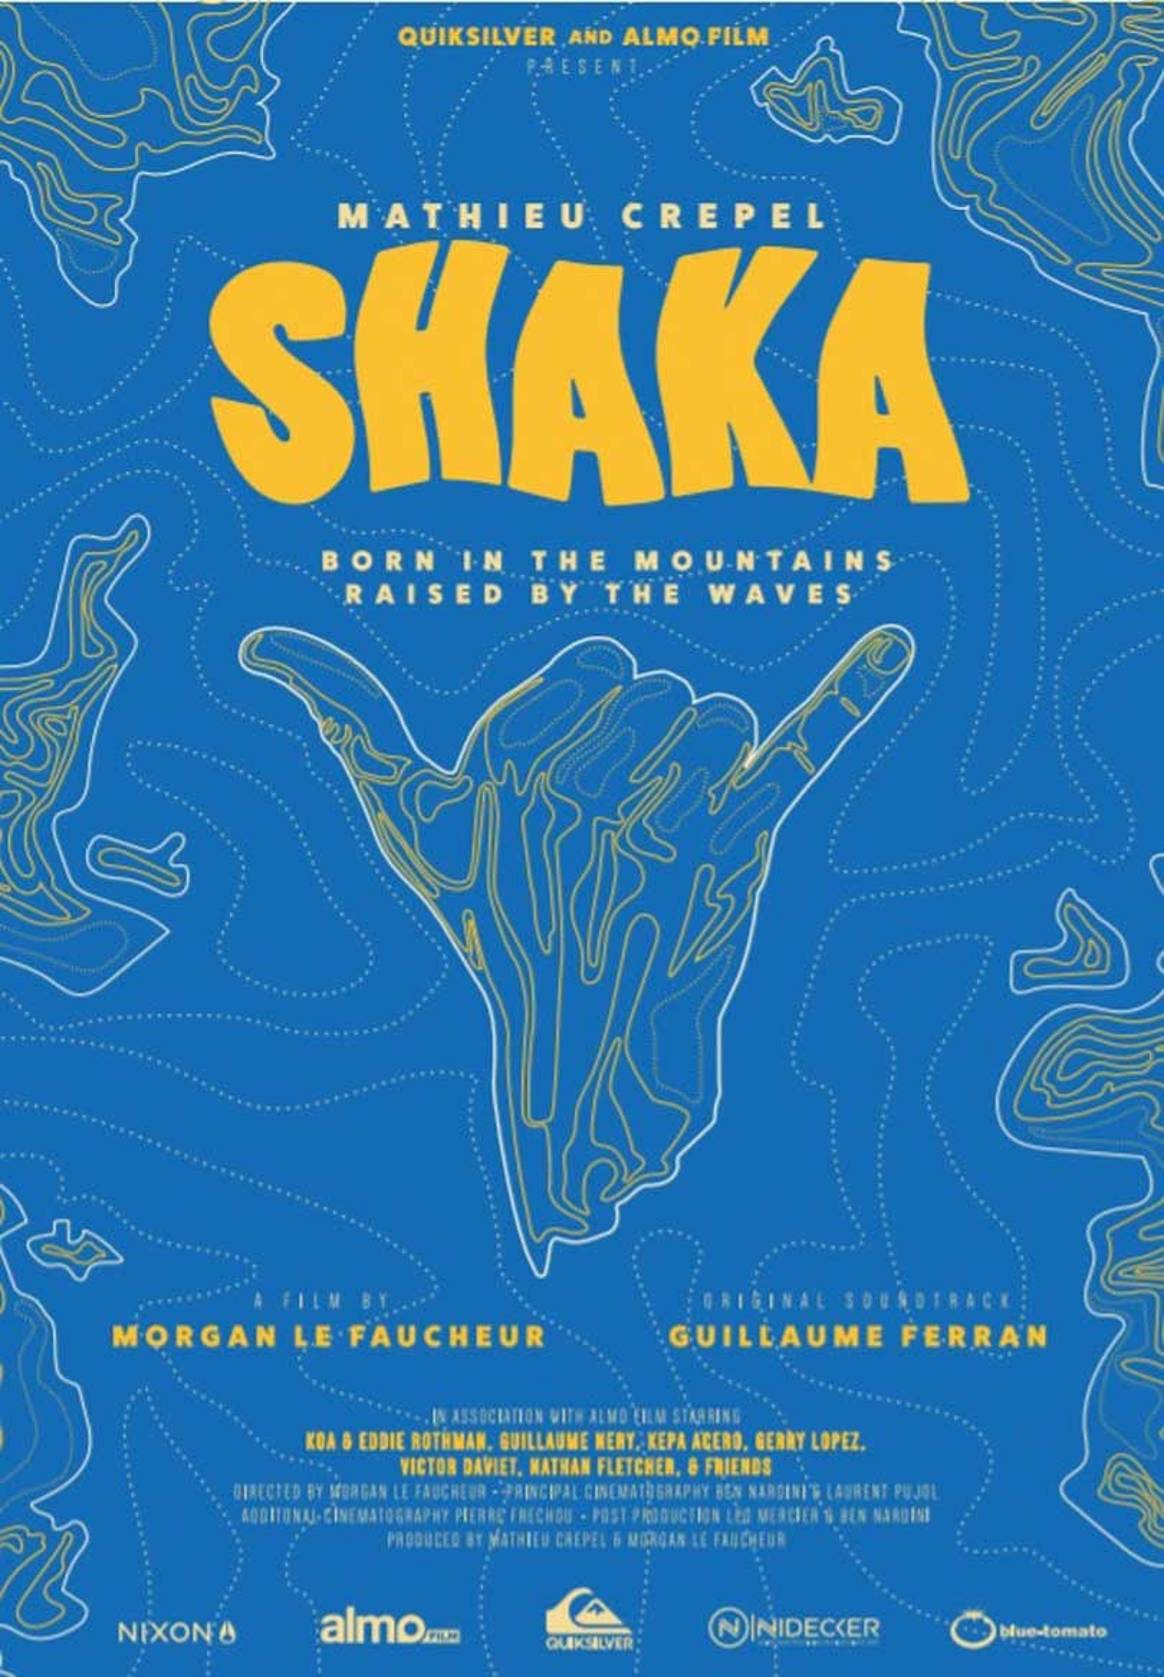 Quiksilver présente “Shaka” de Mathieu Crepel : au diapason avec la nature